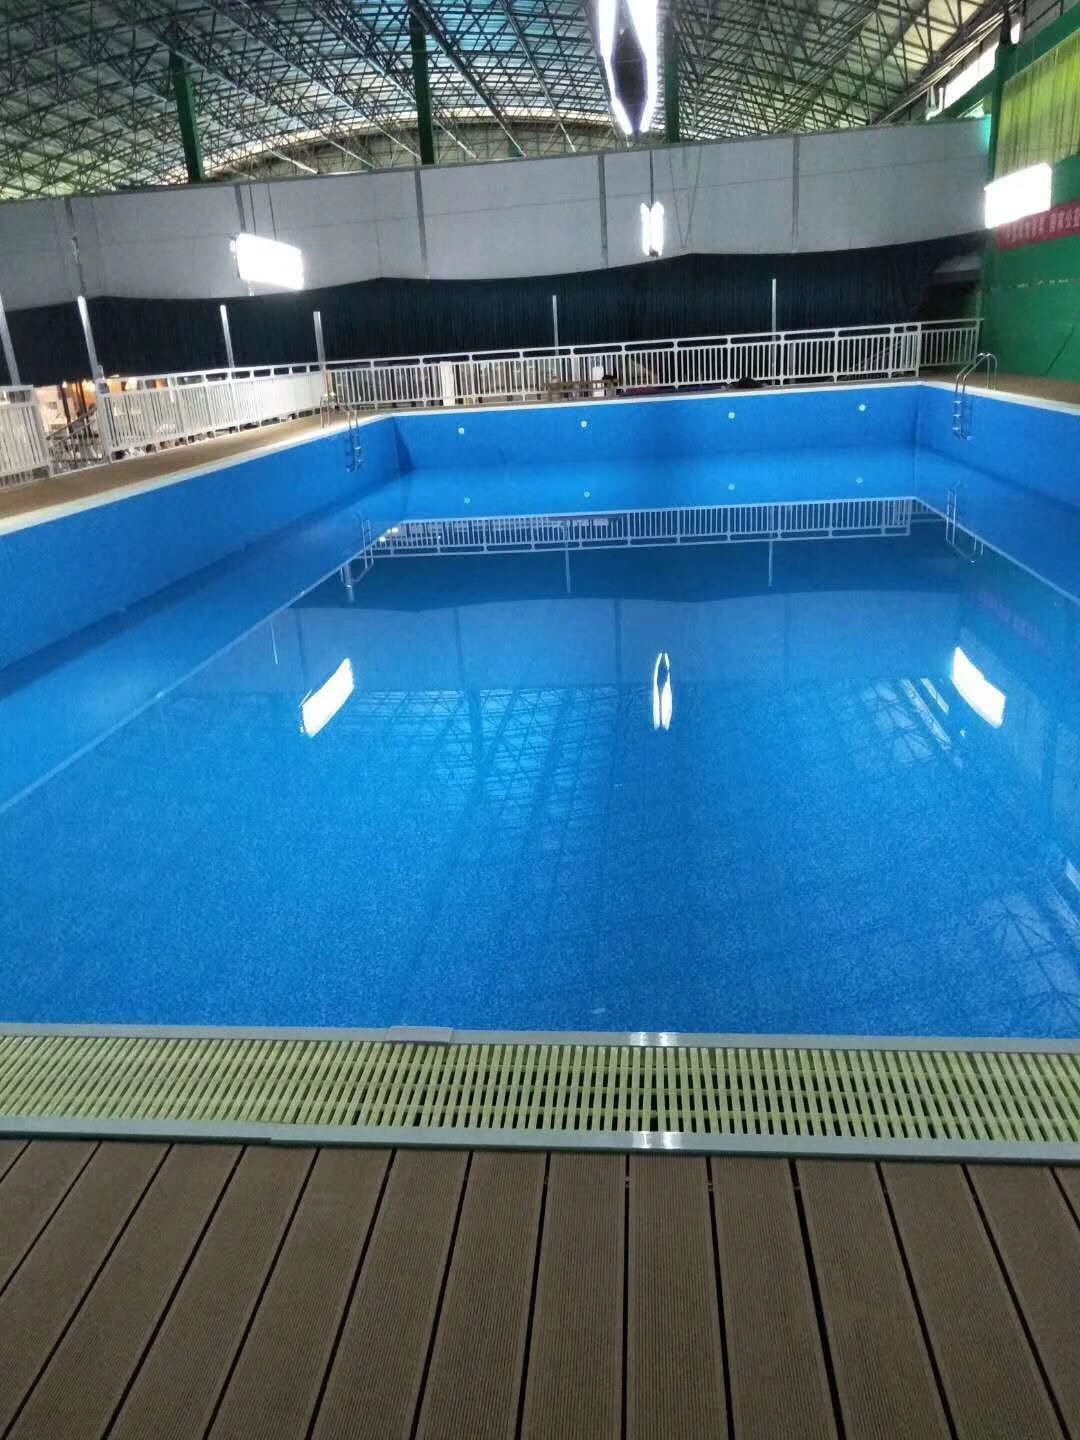 云南省香格里拉市钢结构拼装式泳池，拆装式泳池、整体游泳池、健身房泳池